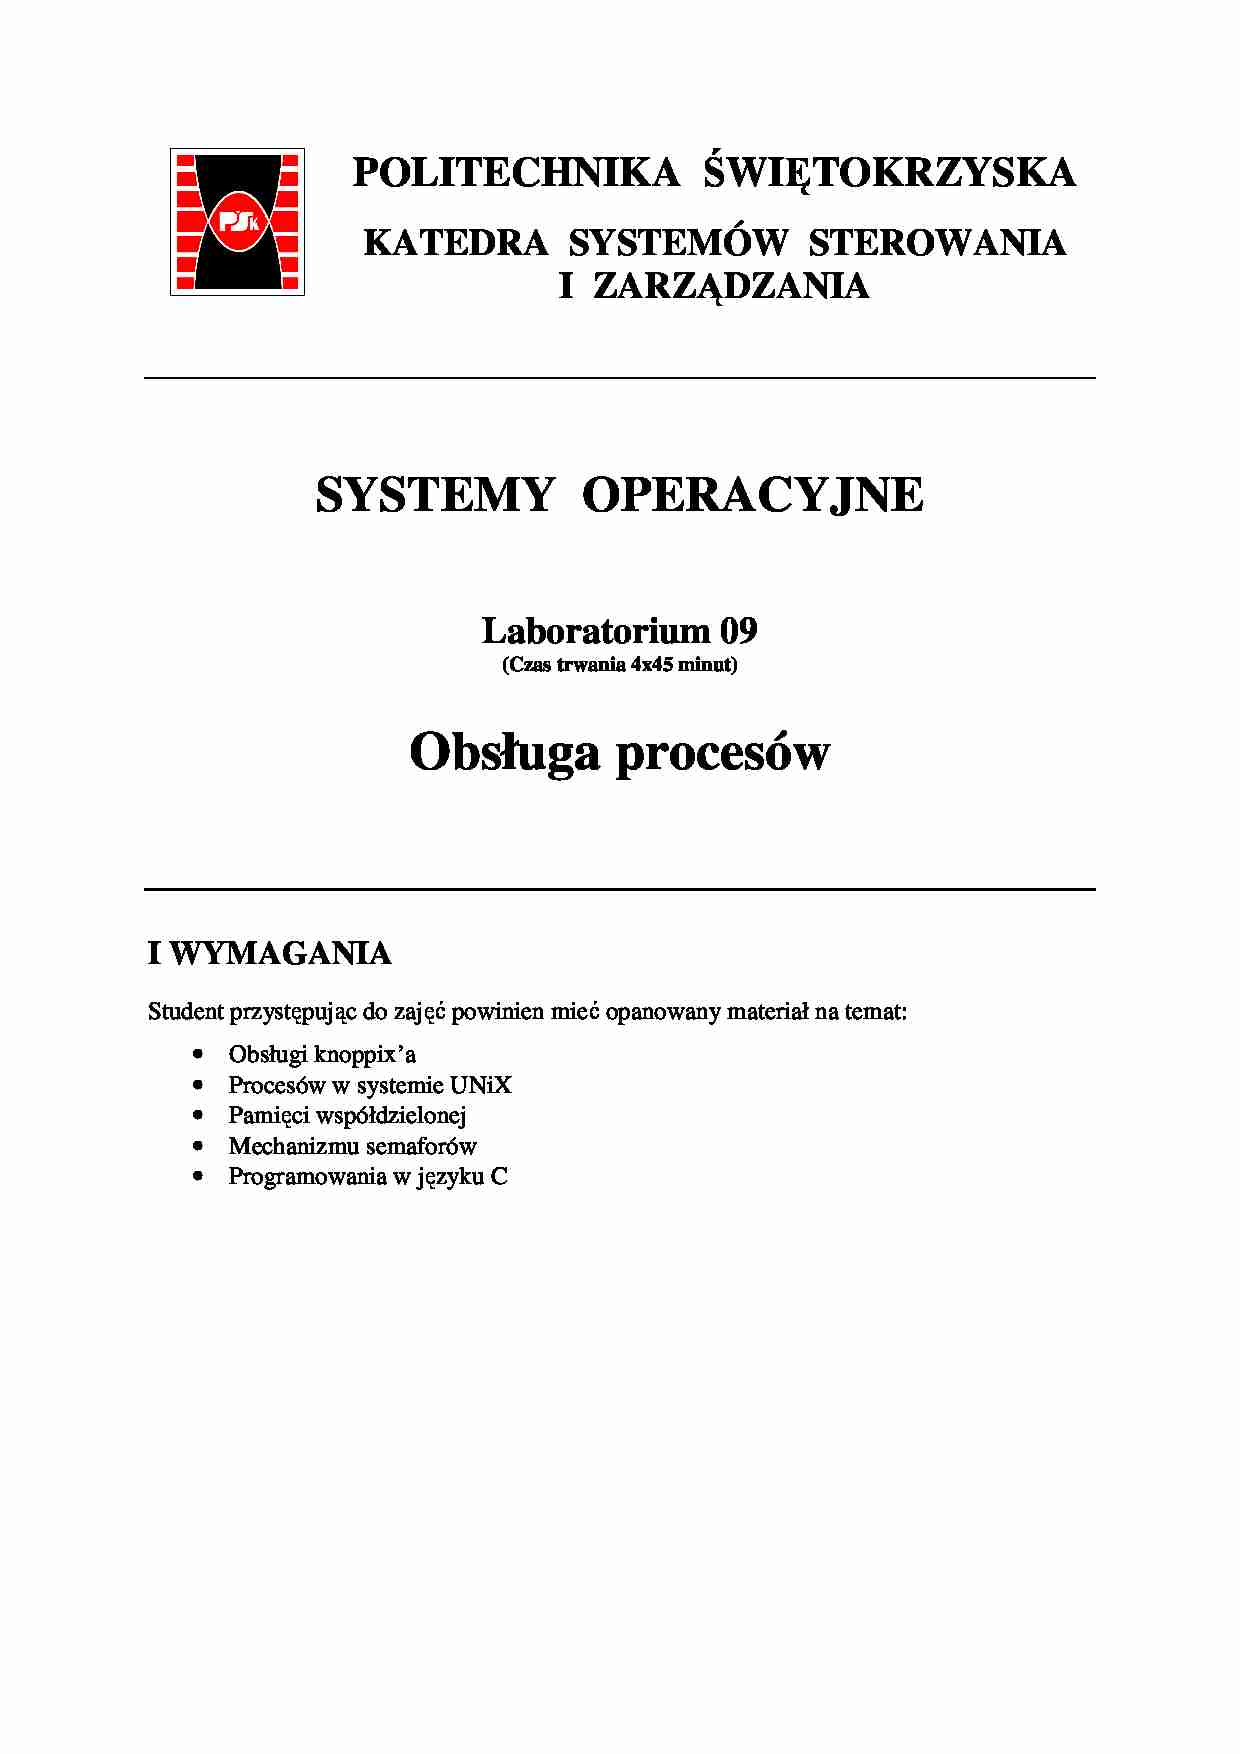 Systemy operacyjne, procesy - strona 1